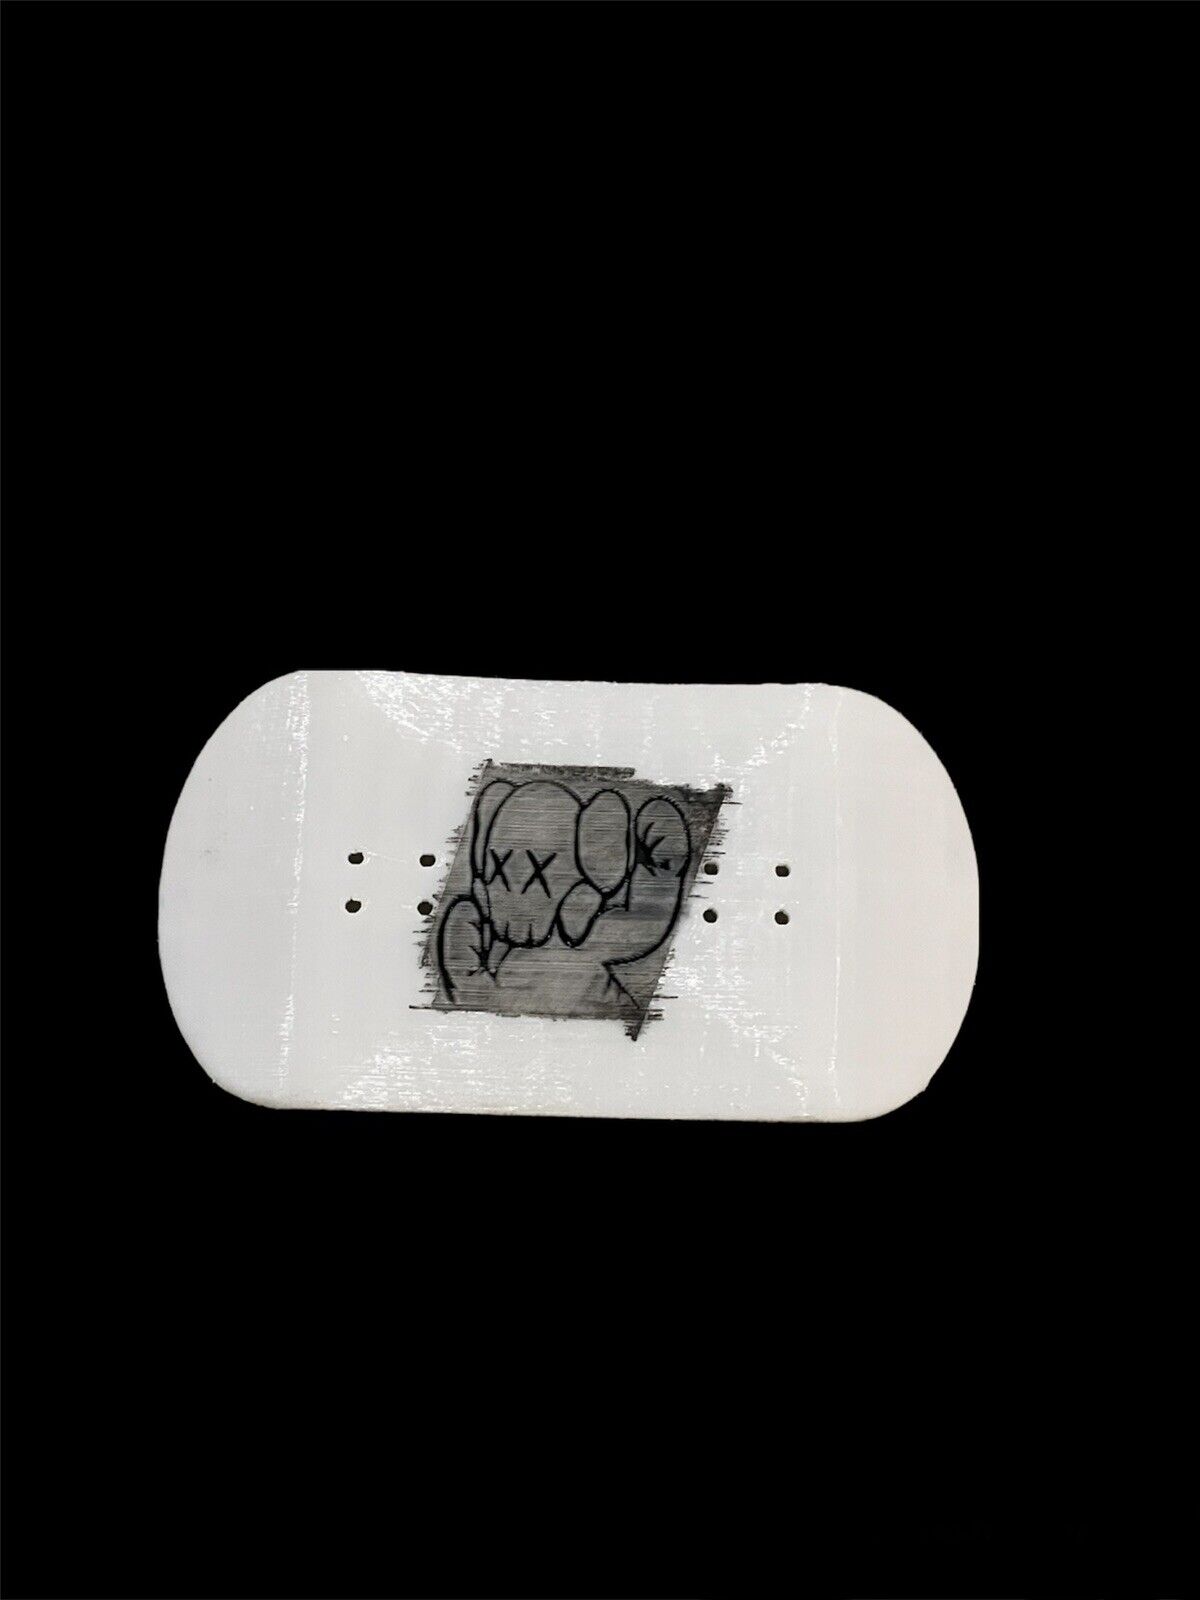 50x96 kaws fingerboard skateboard deck Wide Fingerboard